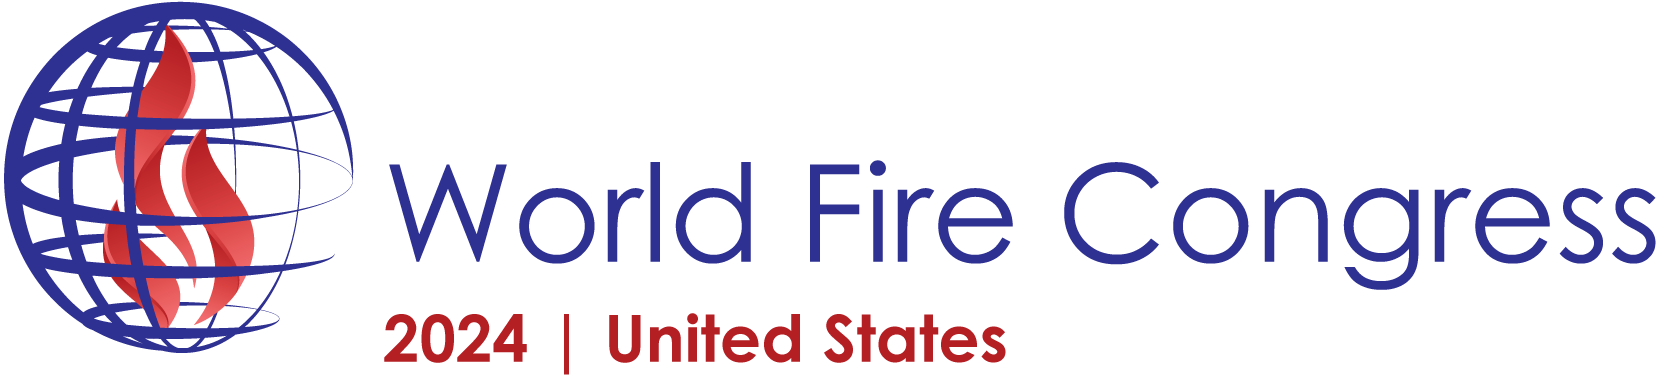 World Fire Congress 2024